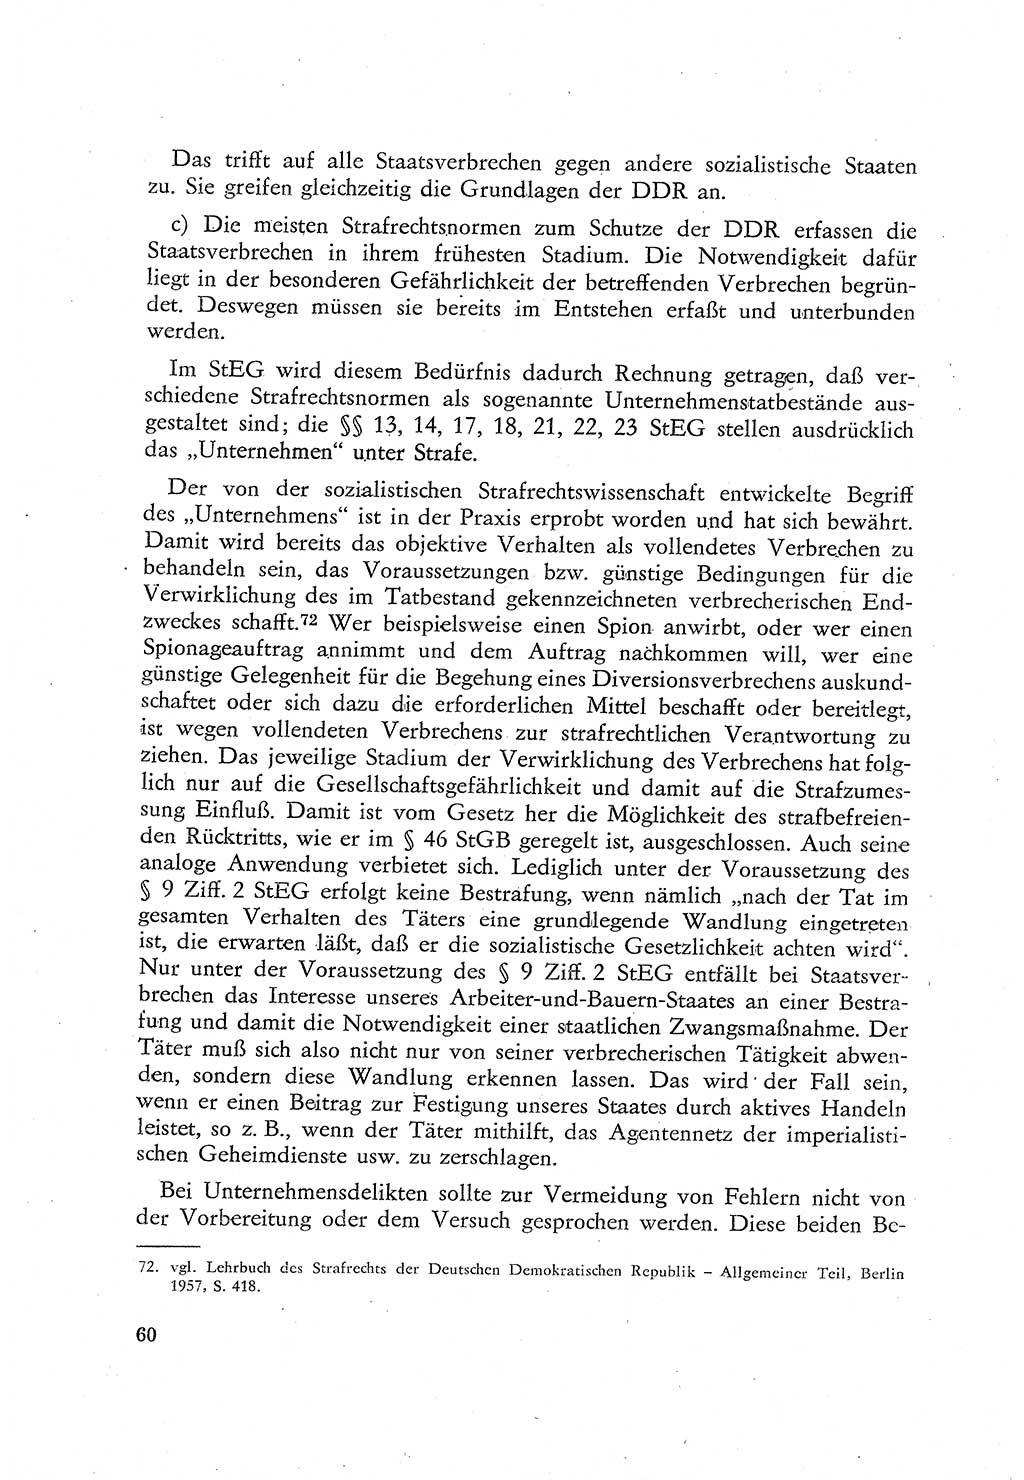 Beiträge zum Strafrecht [Deutsche Demokratische Republik (DDR)], Staatsverbrechen 1959, Seite 60 (Beitr. Strafr. DDR St.-Verbr. 1959, S. 60)